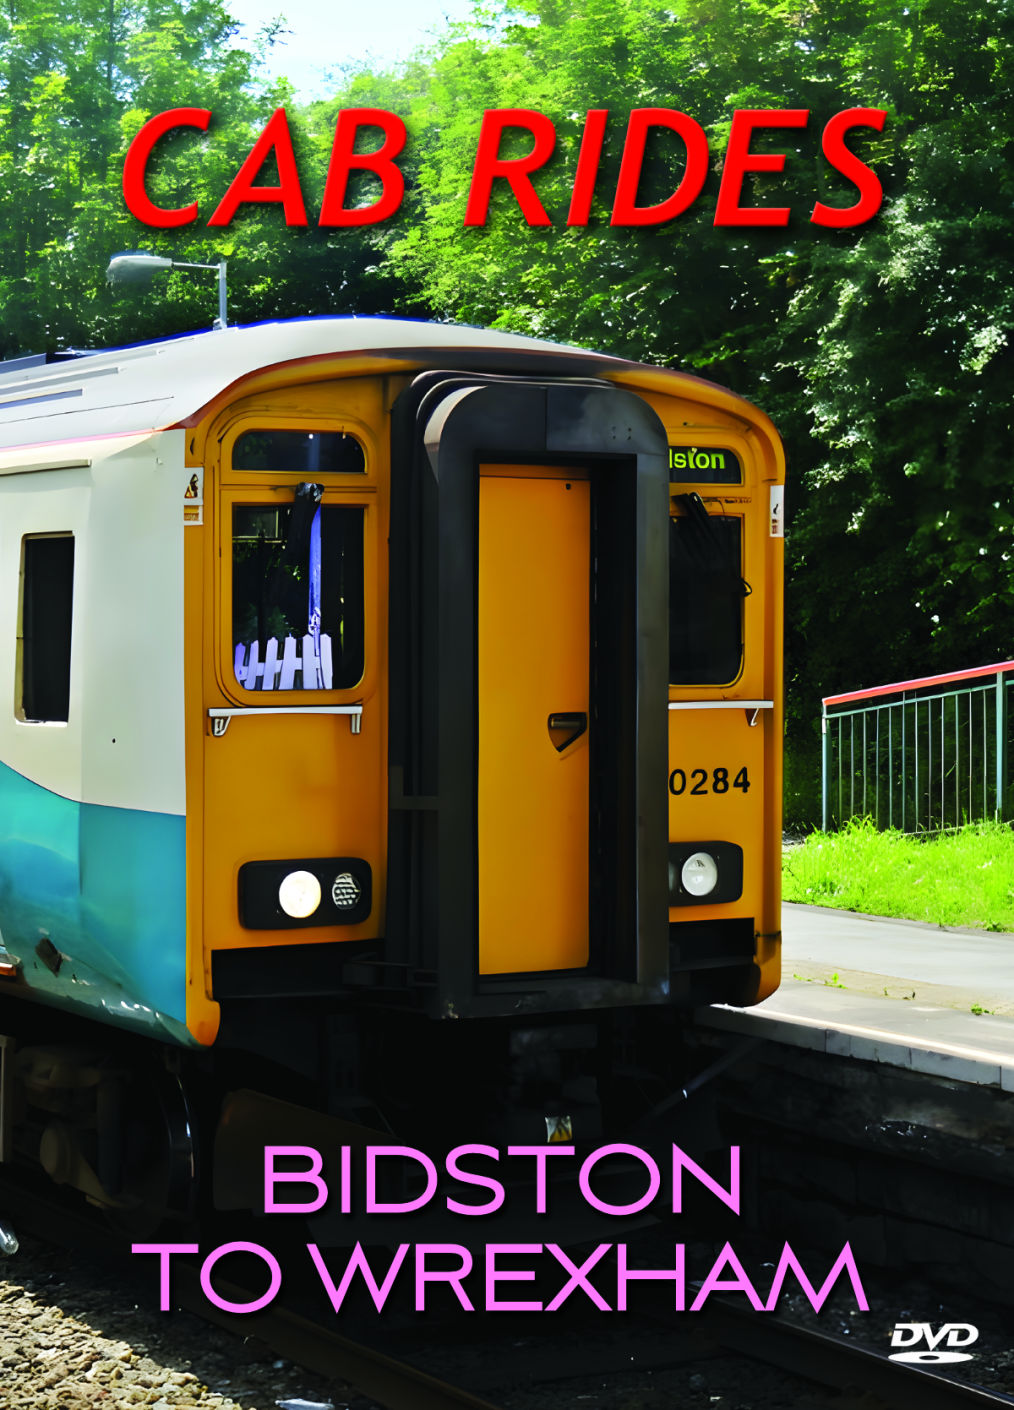 Cab Ride Bidston to Wrexham